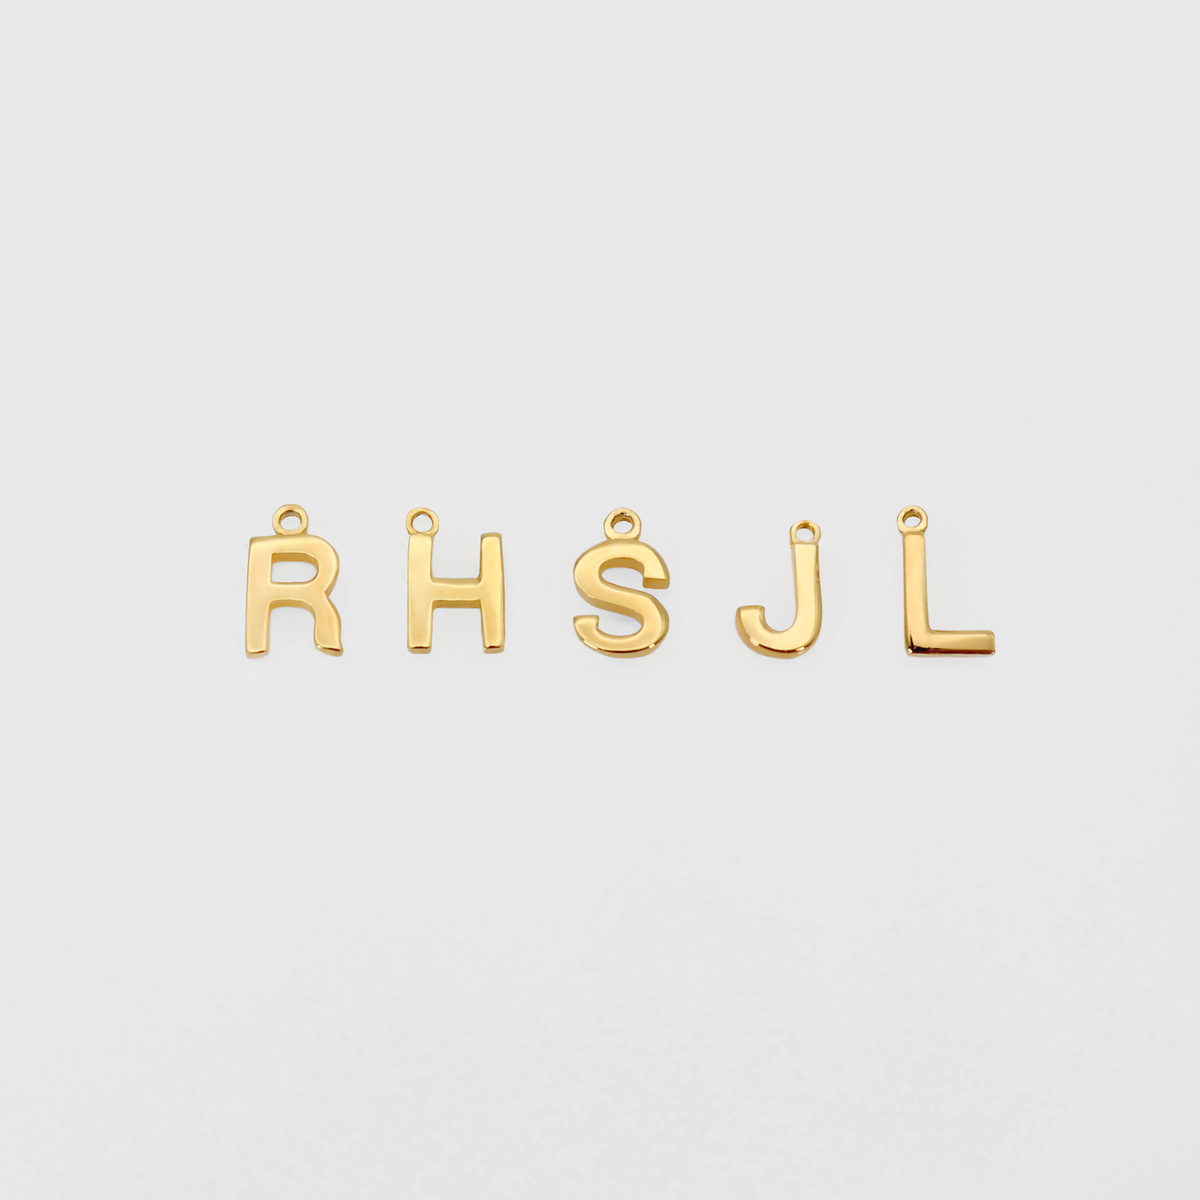 Alphabet letter pendant necklace Initial Pendants BlackSugar - Best Online Jewelry Shop West Los Angeles